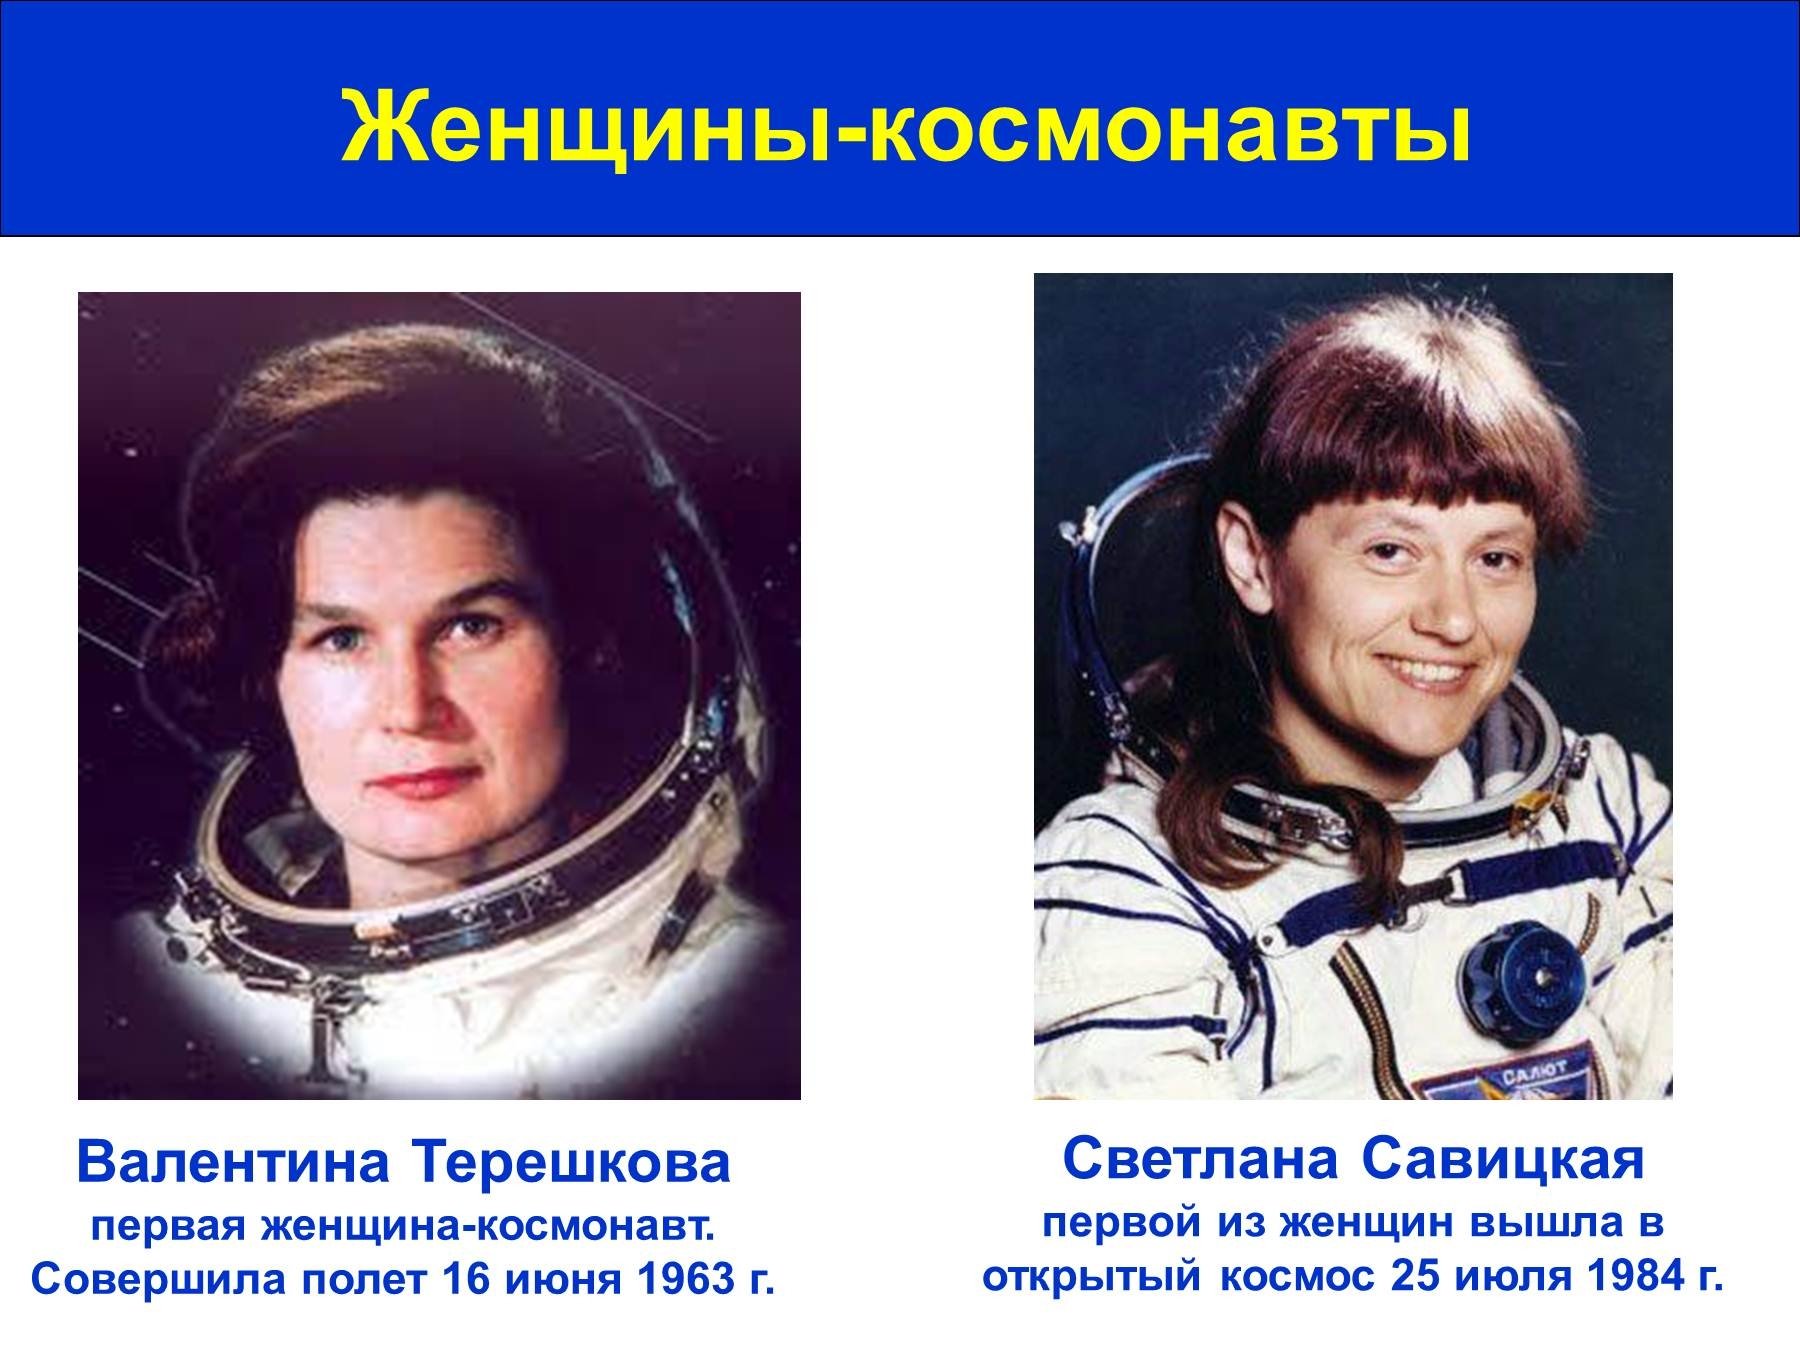 Назовите известных вам космонавтов современности. Восток 6 Терешкова. Восток-6 космический корабль Терешковой.